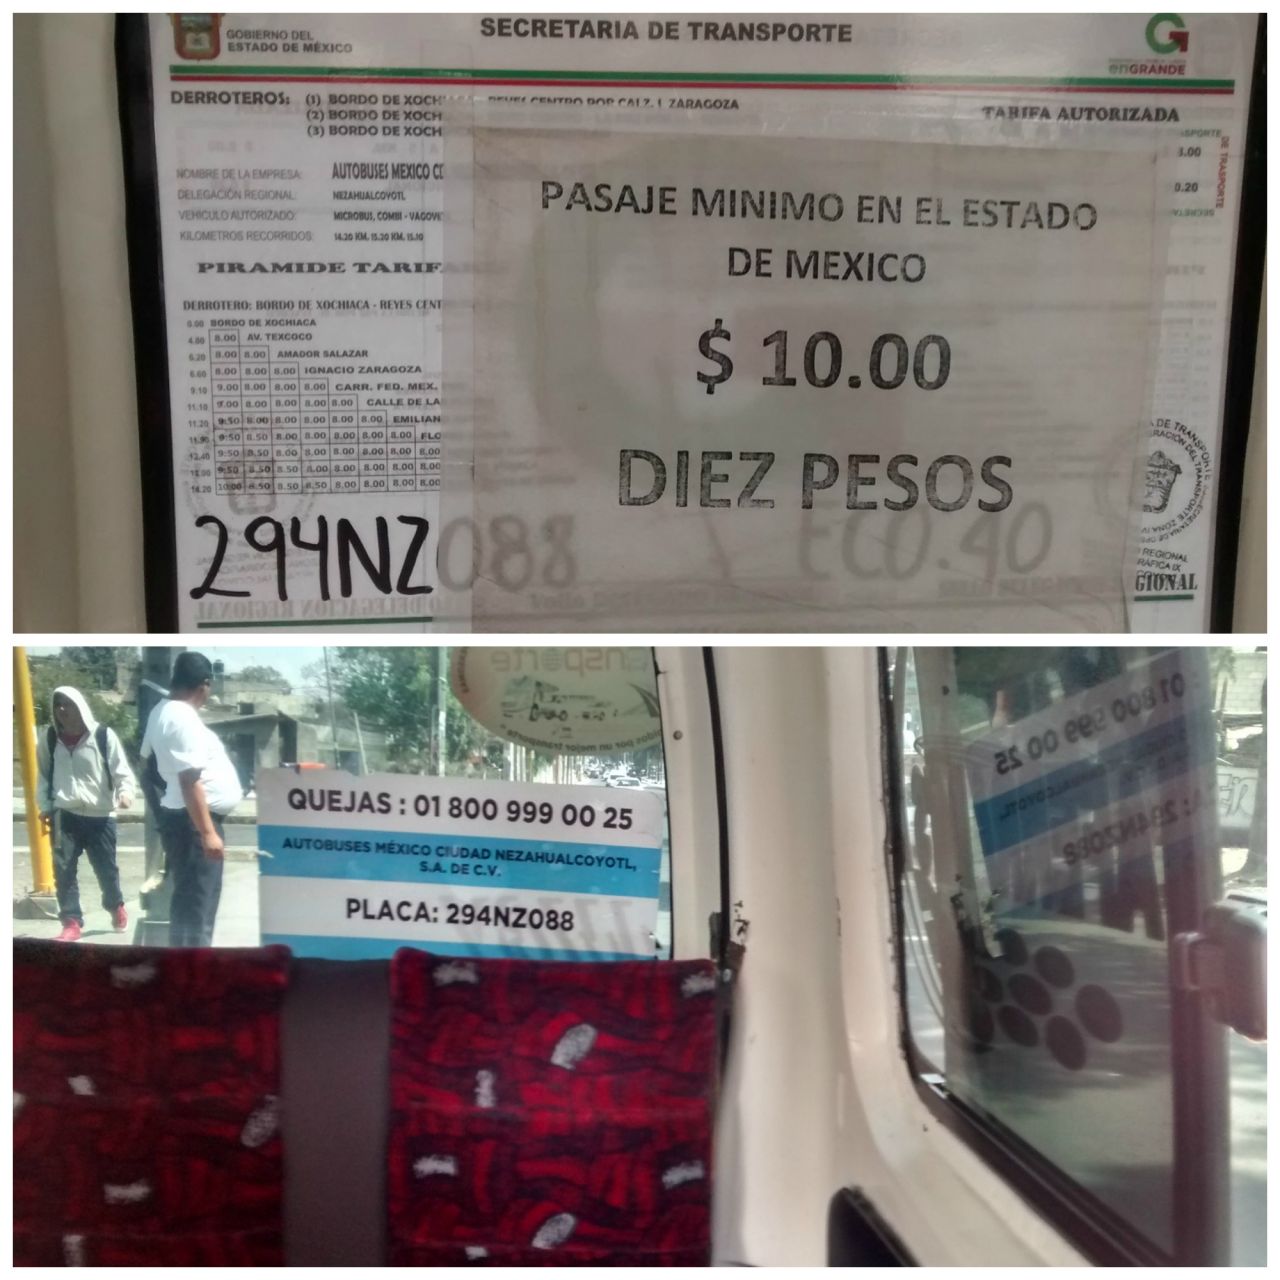 Los transportistas no respetan al GEM, cobran 10 pesos mínimos